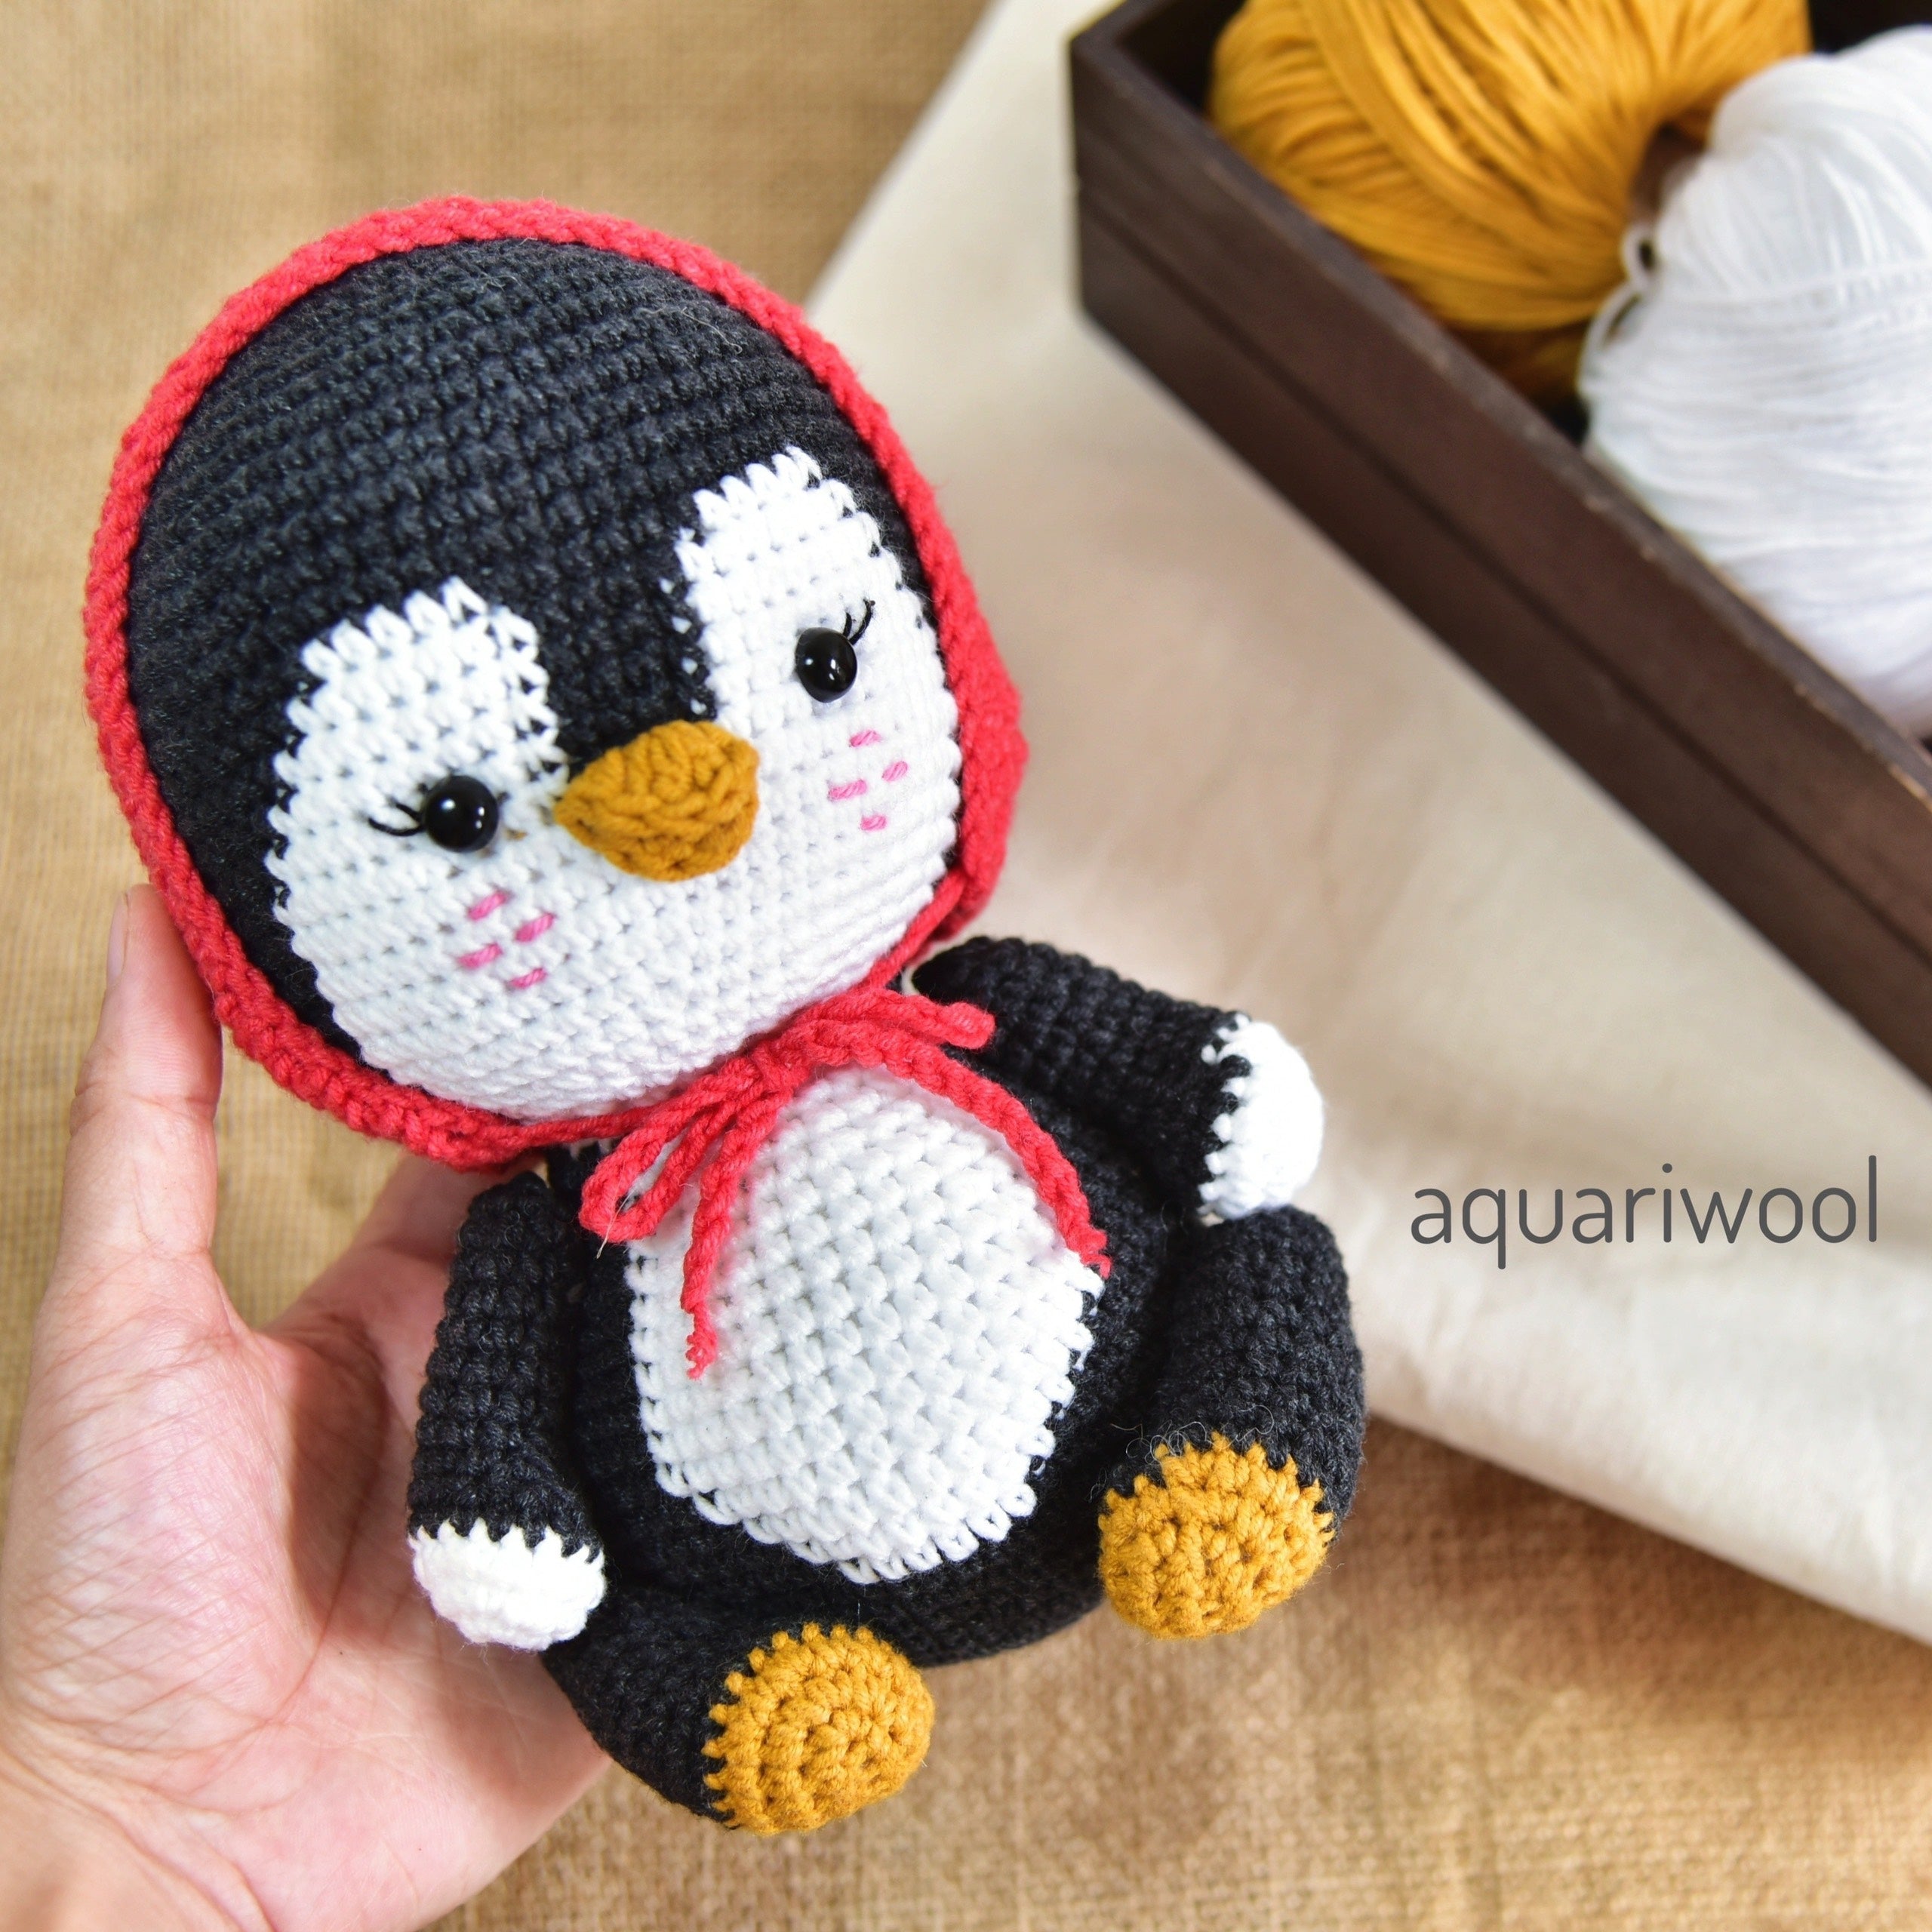 Little Red The Penguin Crochet Pattern by Aquariwool Crochet (Crochet Doll Pattern/Amigurumi Pattern for Baby gift)